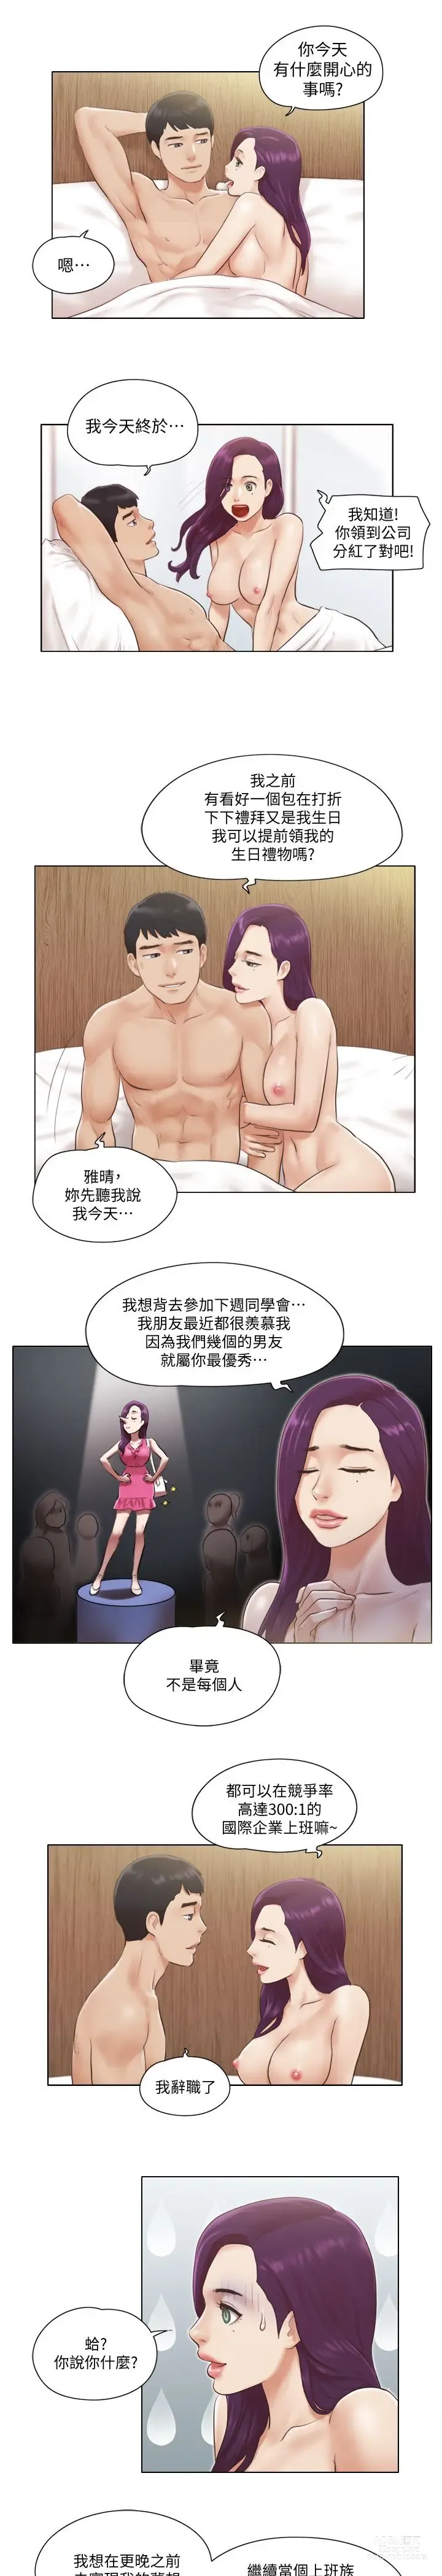 Page 9 of manga 單身女子公寓 1-41 END